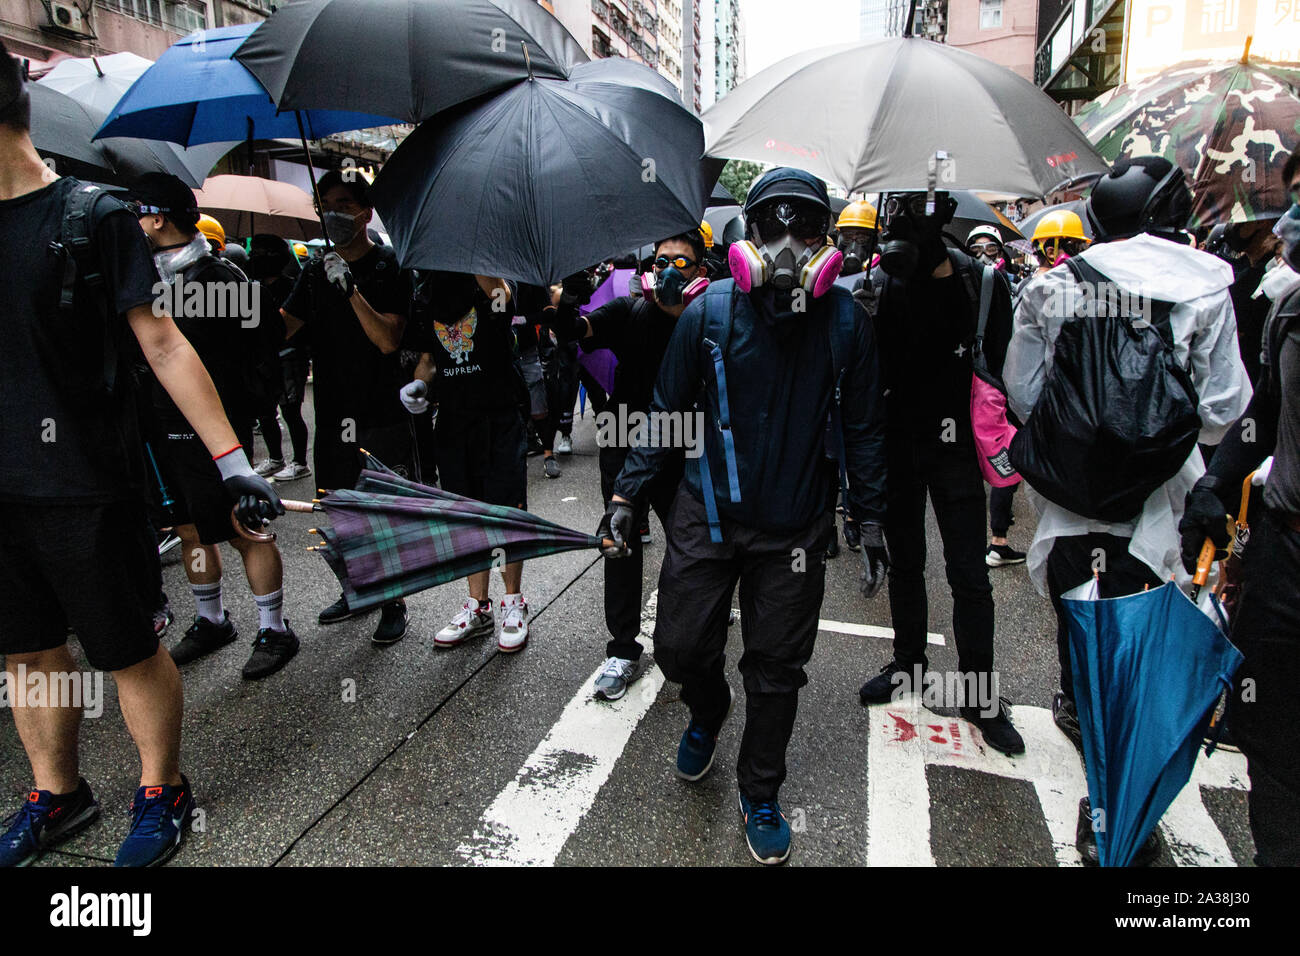 Eine Demonstrantin hält ein Regenschirm während der Demonstration. Eingabe der 18 Wochenende der Unruhen, Demonstranten marschierten im Regen nach einer Anti-mask Gesetz wurde in einer Bemühung, Demonstrationen abzuhalten. Die Demonstranten skandierten Parolen und fuhr fort zu Fragen für die fünf Forderungen erfüllt werden. Die Demonstranten zu Zusammenstößen zwischen Polizei und wurden mit Gas, Gummigeschossen getroffen, und einer Wasserkanone bis mehrere wurden schließlich verhaftet. Stockfoto